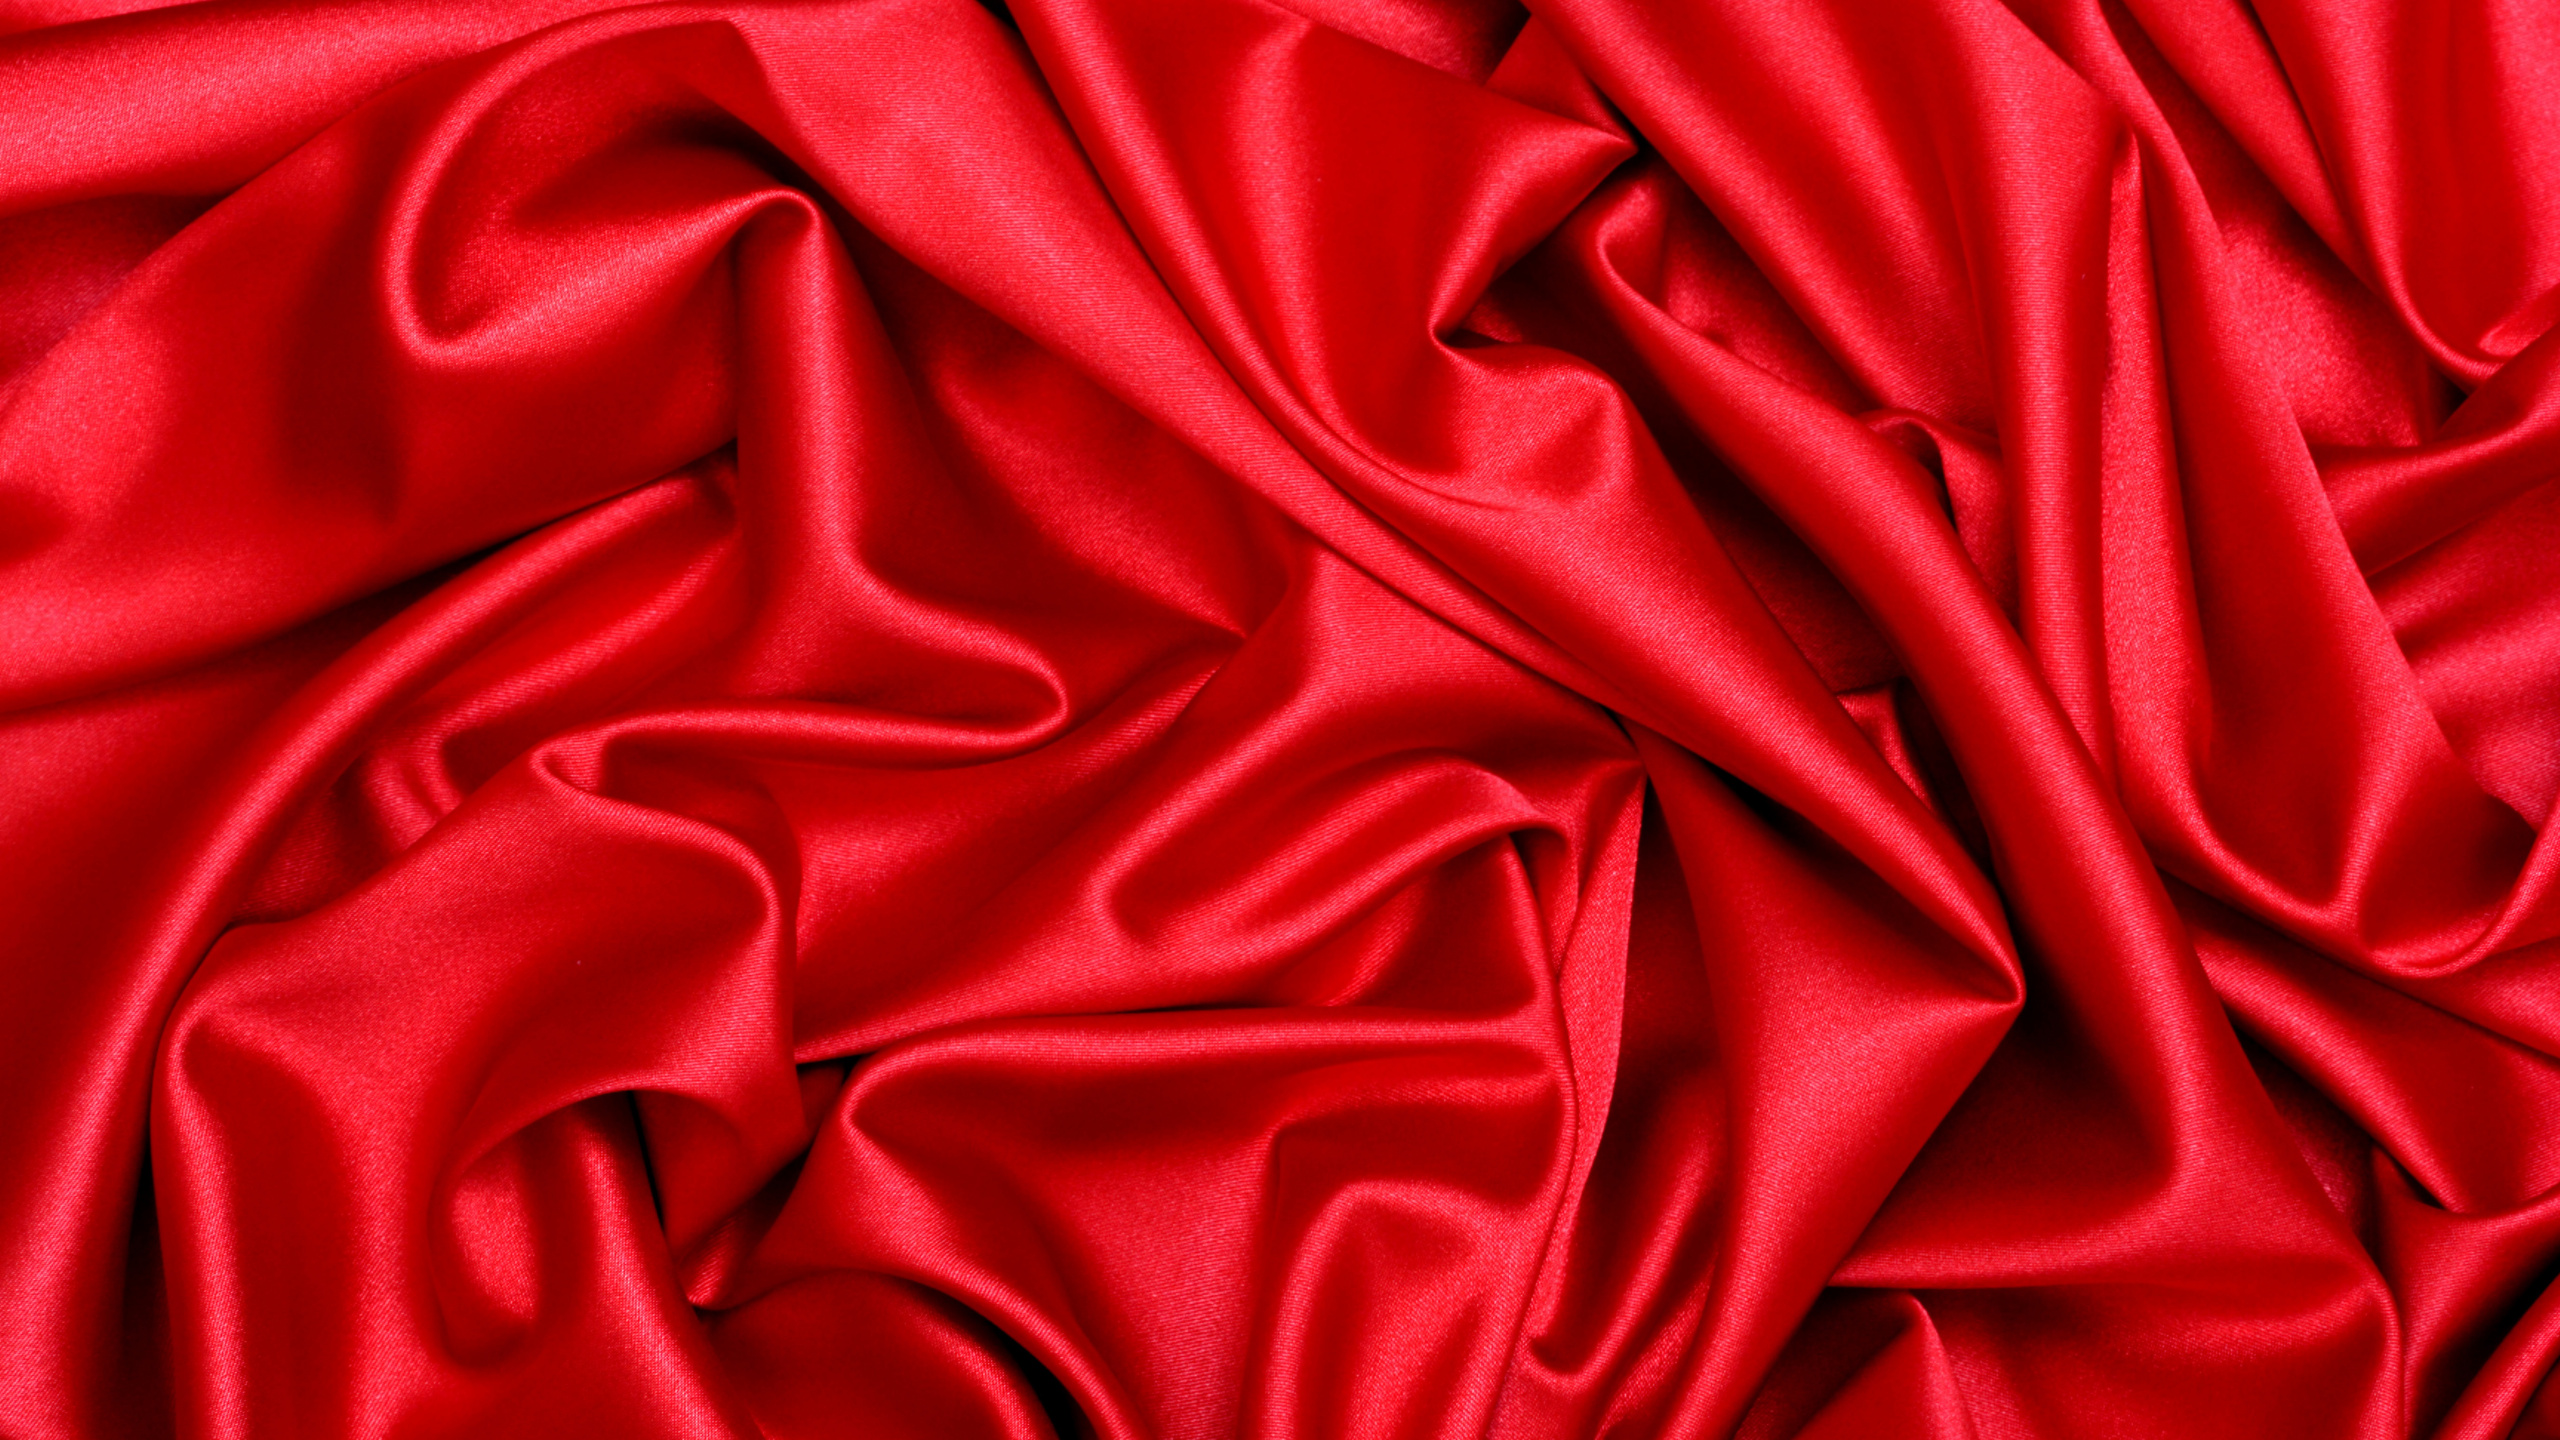 缎面, 丝绸, 红色的, 天鹅绒, 品红色 壁纸 2560x1440 允许